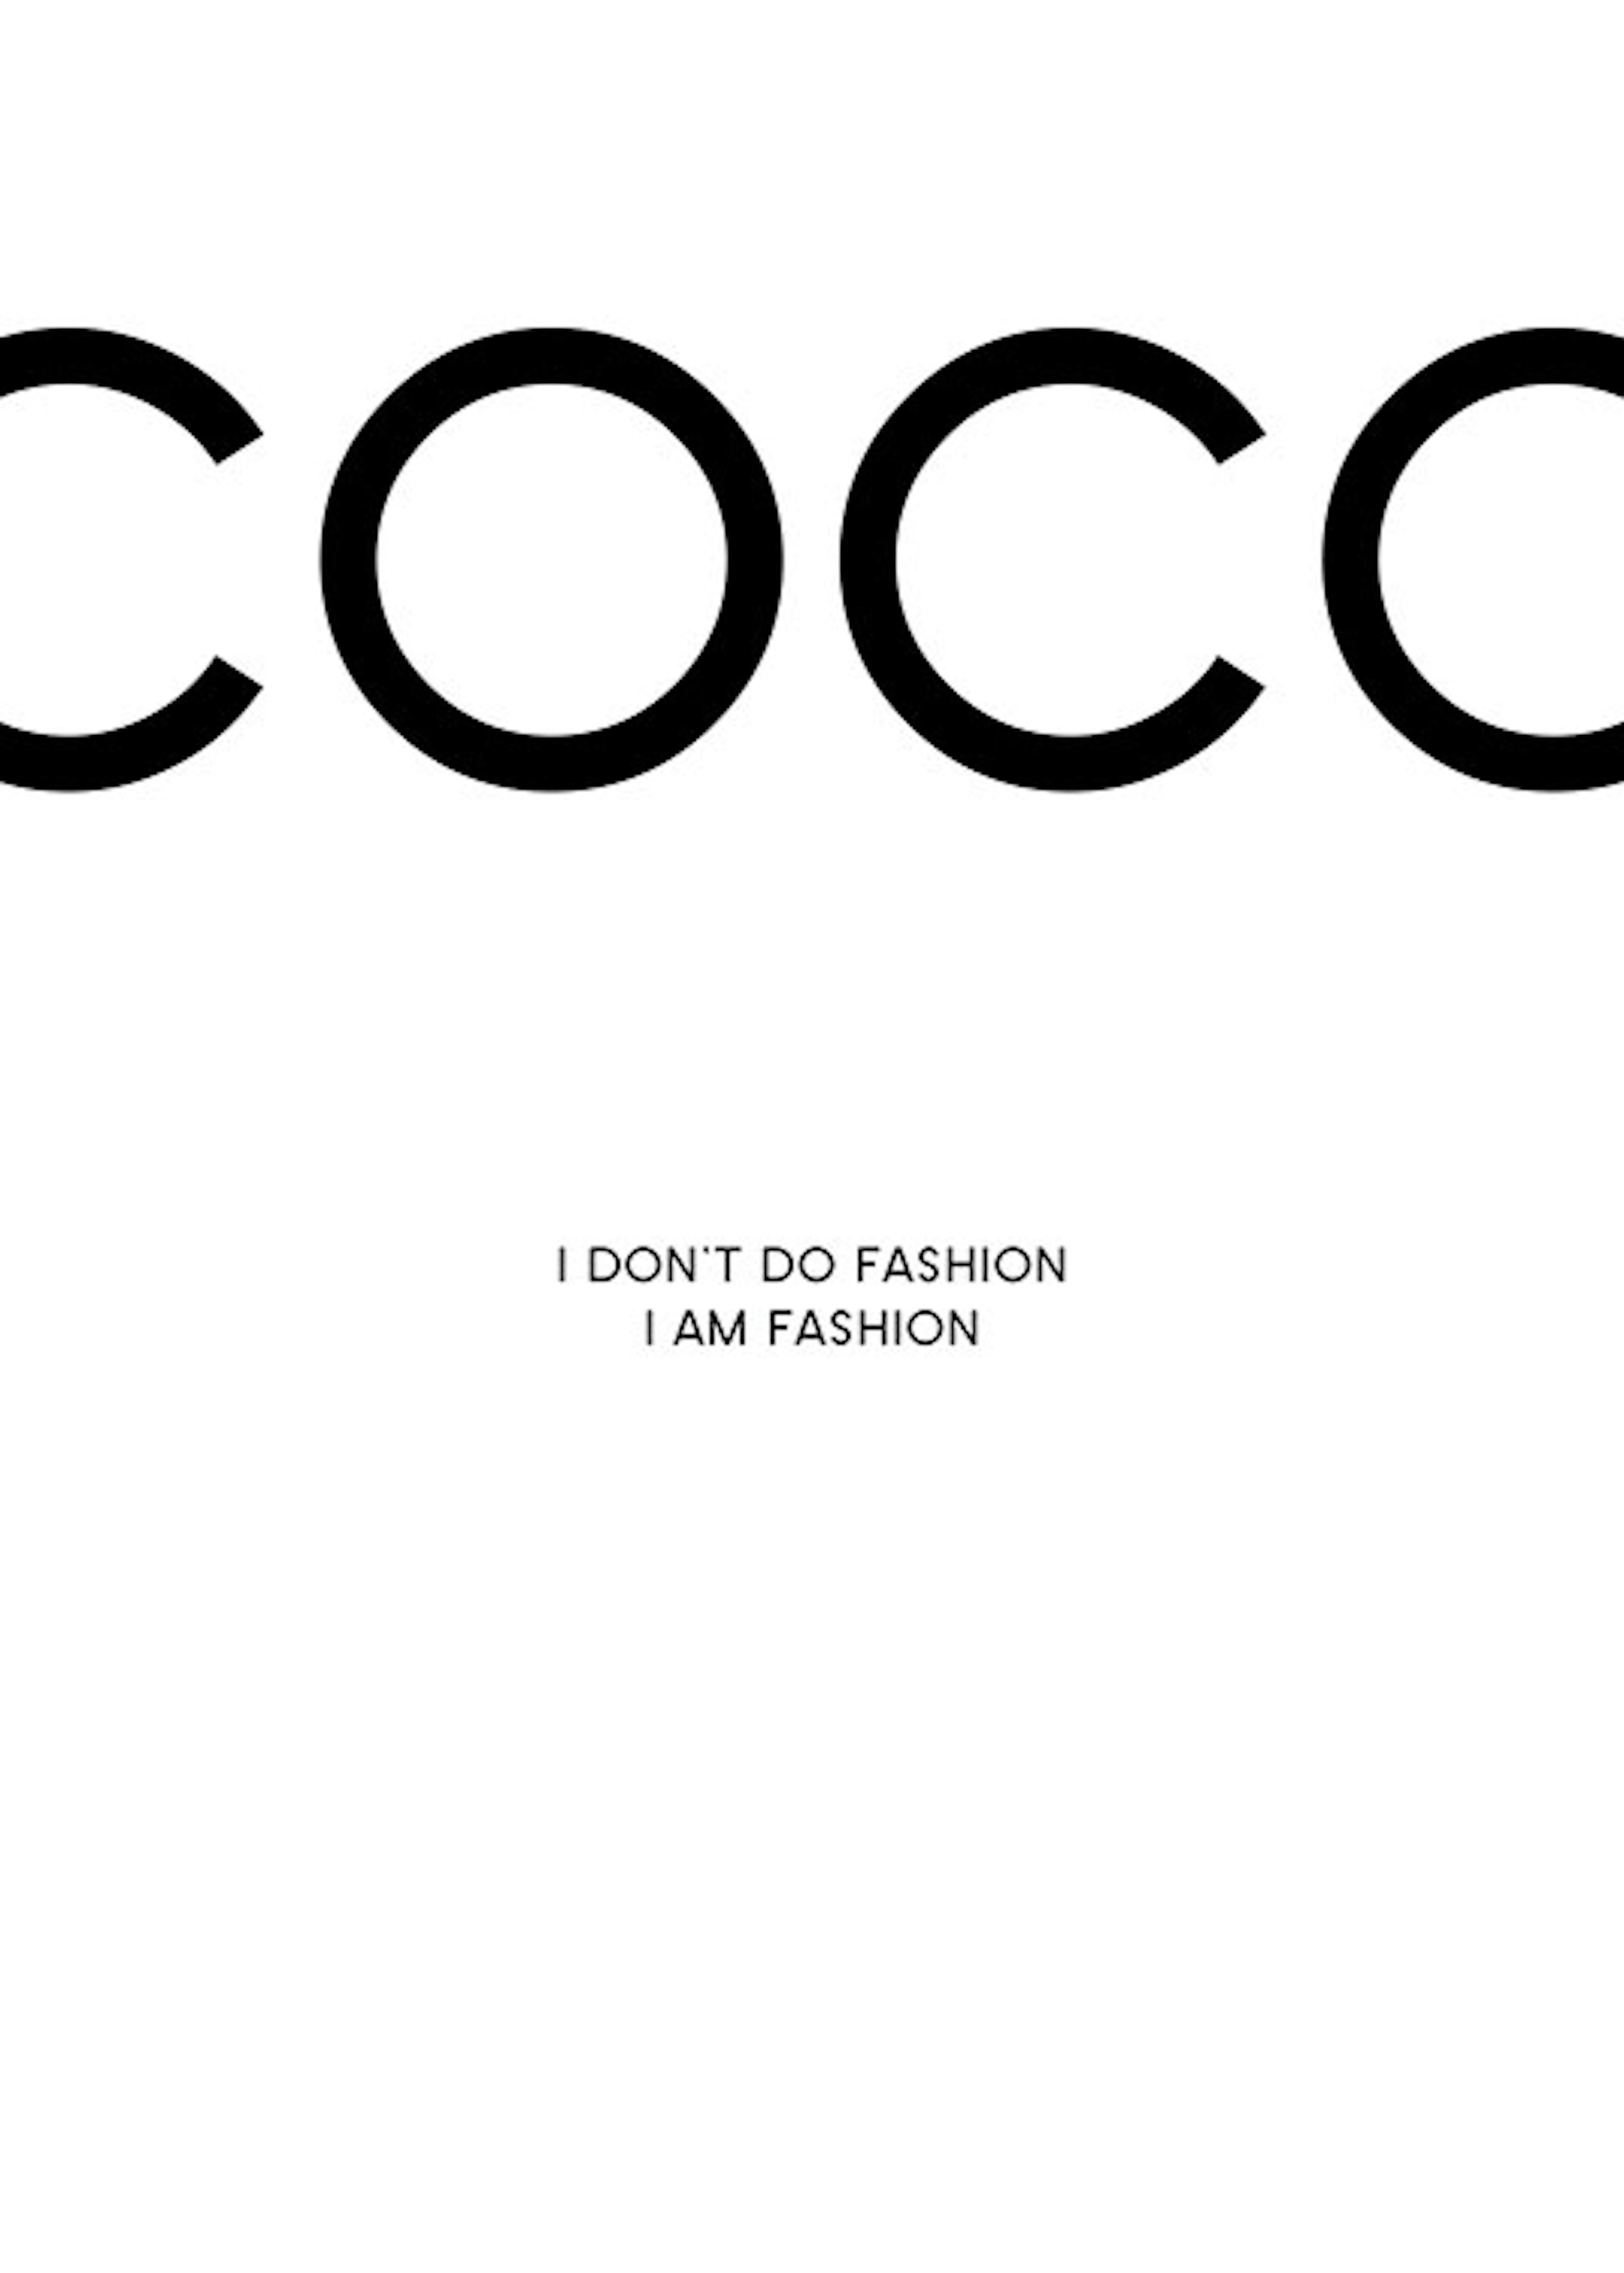 Coco, 포스터 0